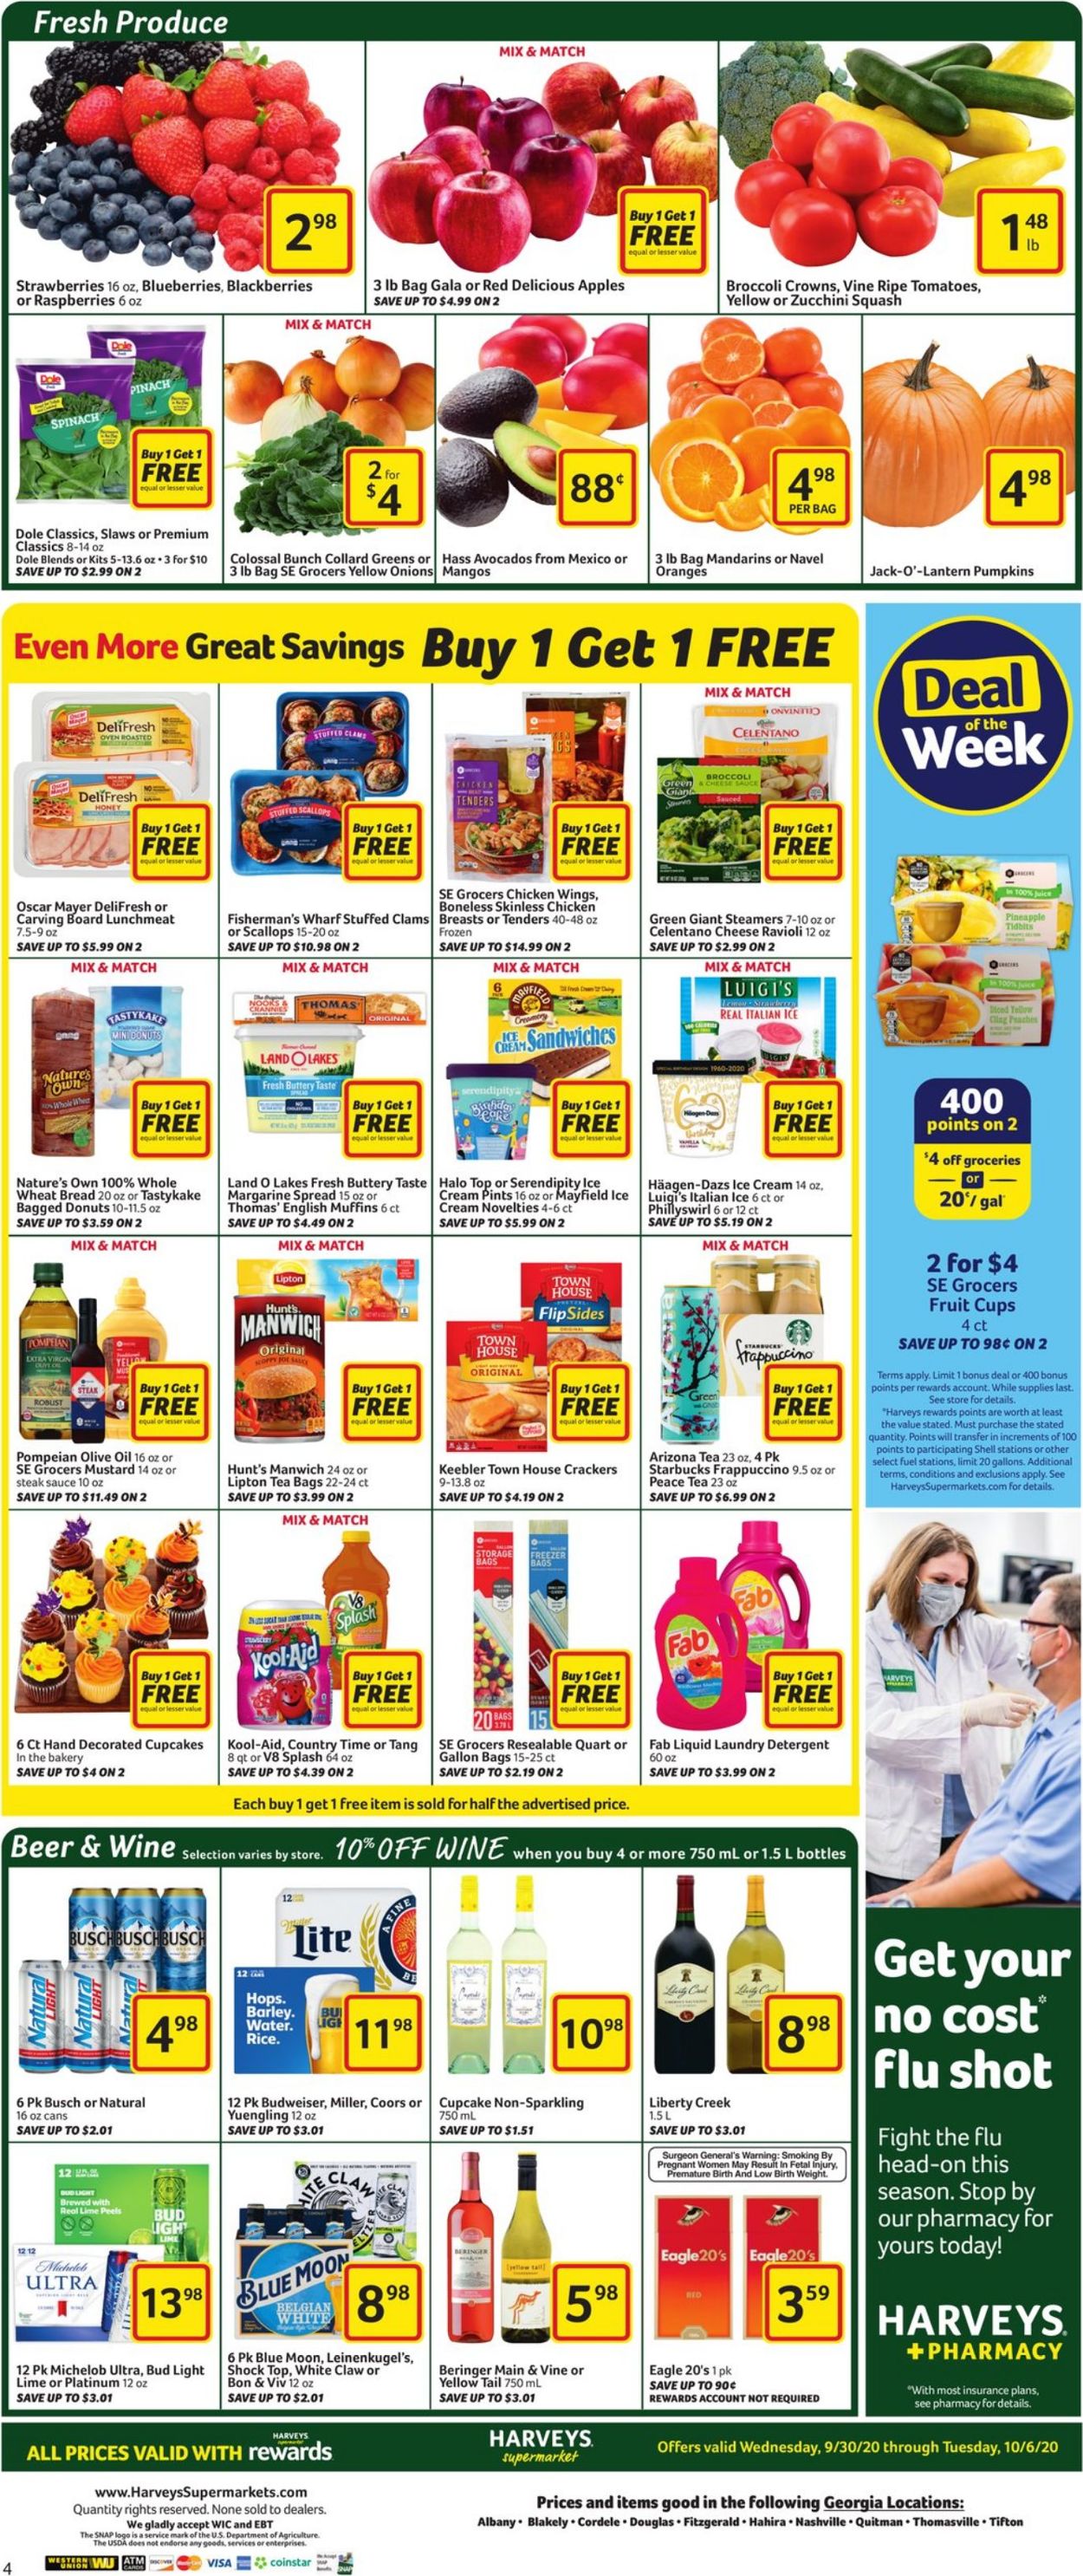 Catalogue Harveys Supermarket from 09/30/2020